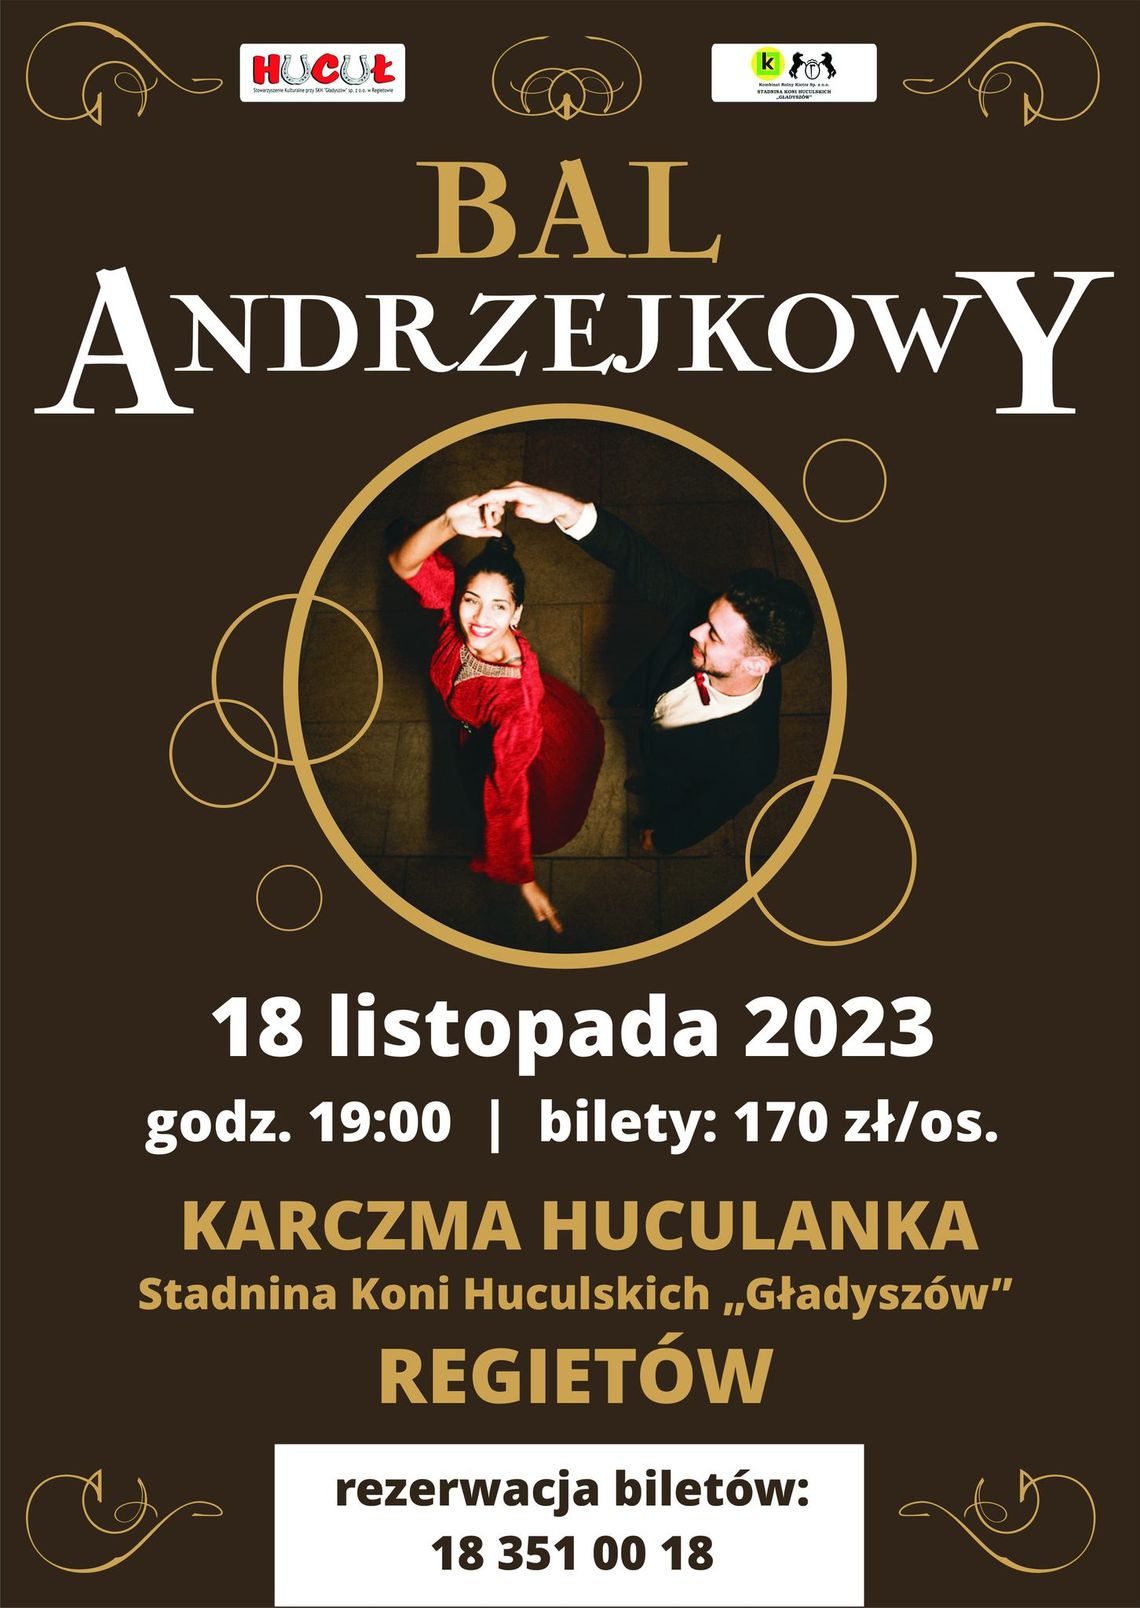 Bal Andrzejkowy w Karczmie Huculanka w Regietowie | halogorlice.info